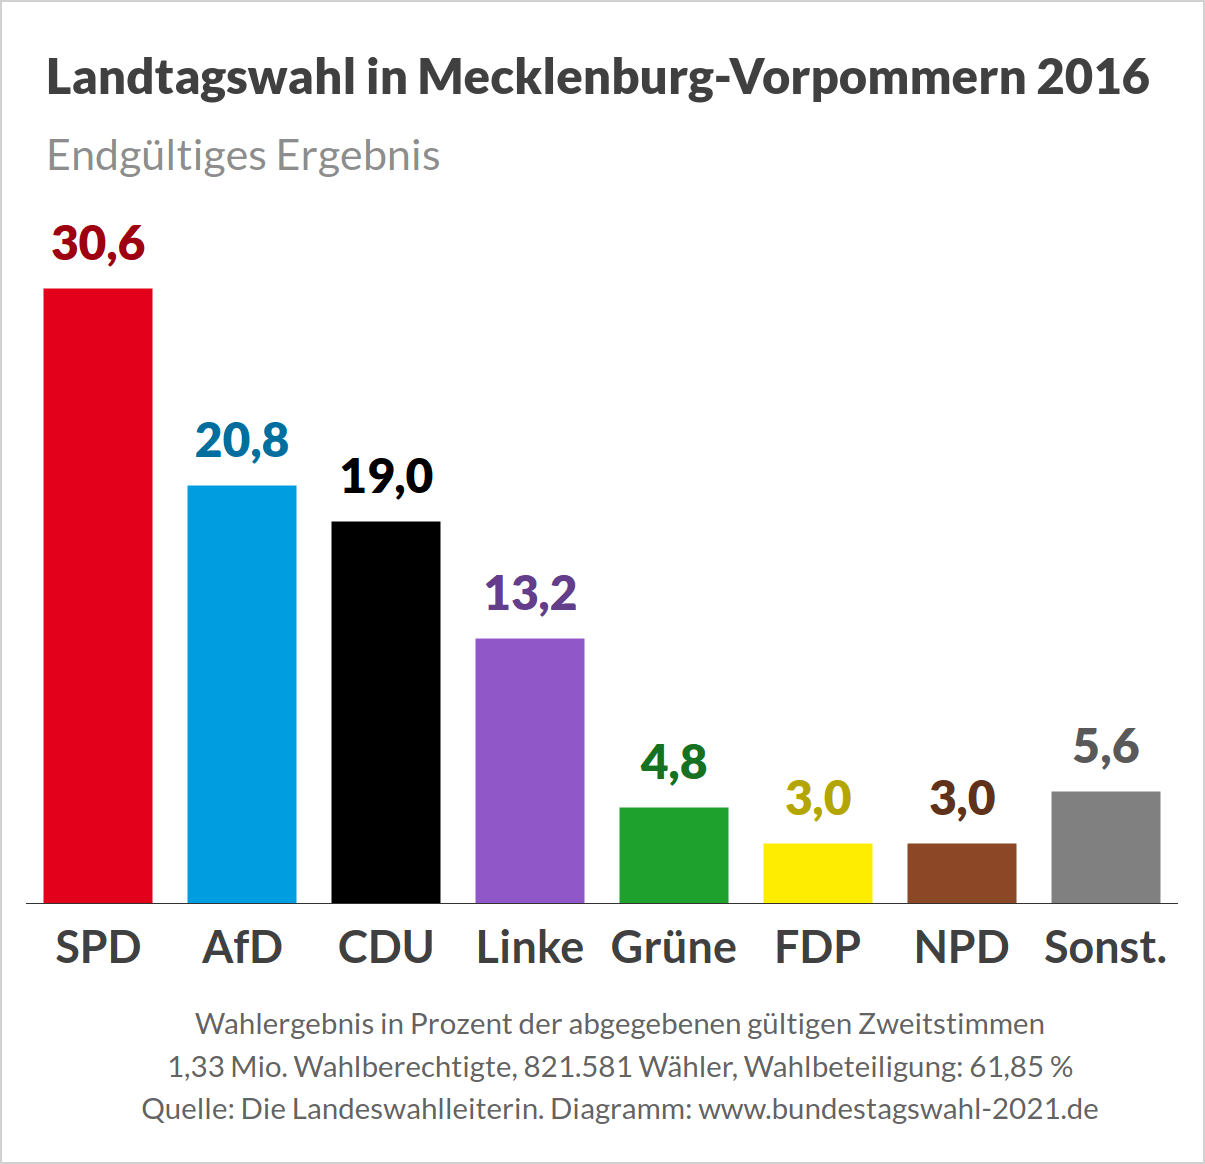 Landtagswahl in Mecklenburg-Vorpommern - Endgültiges Ergebnis